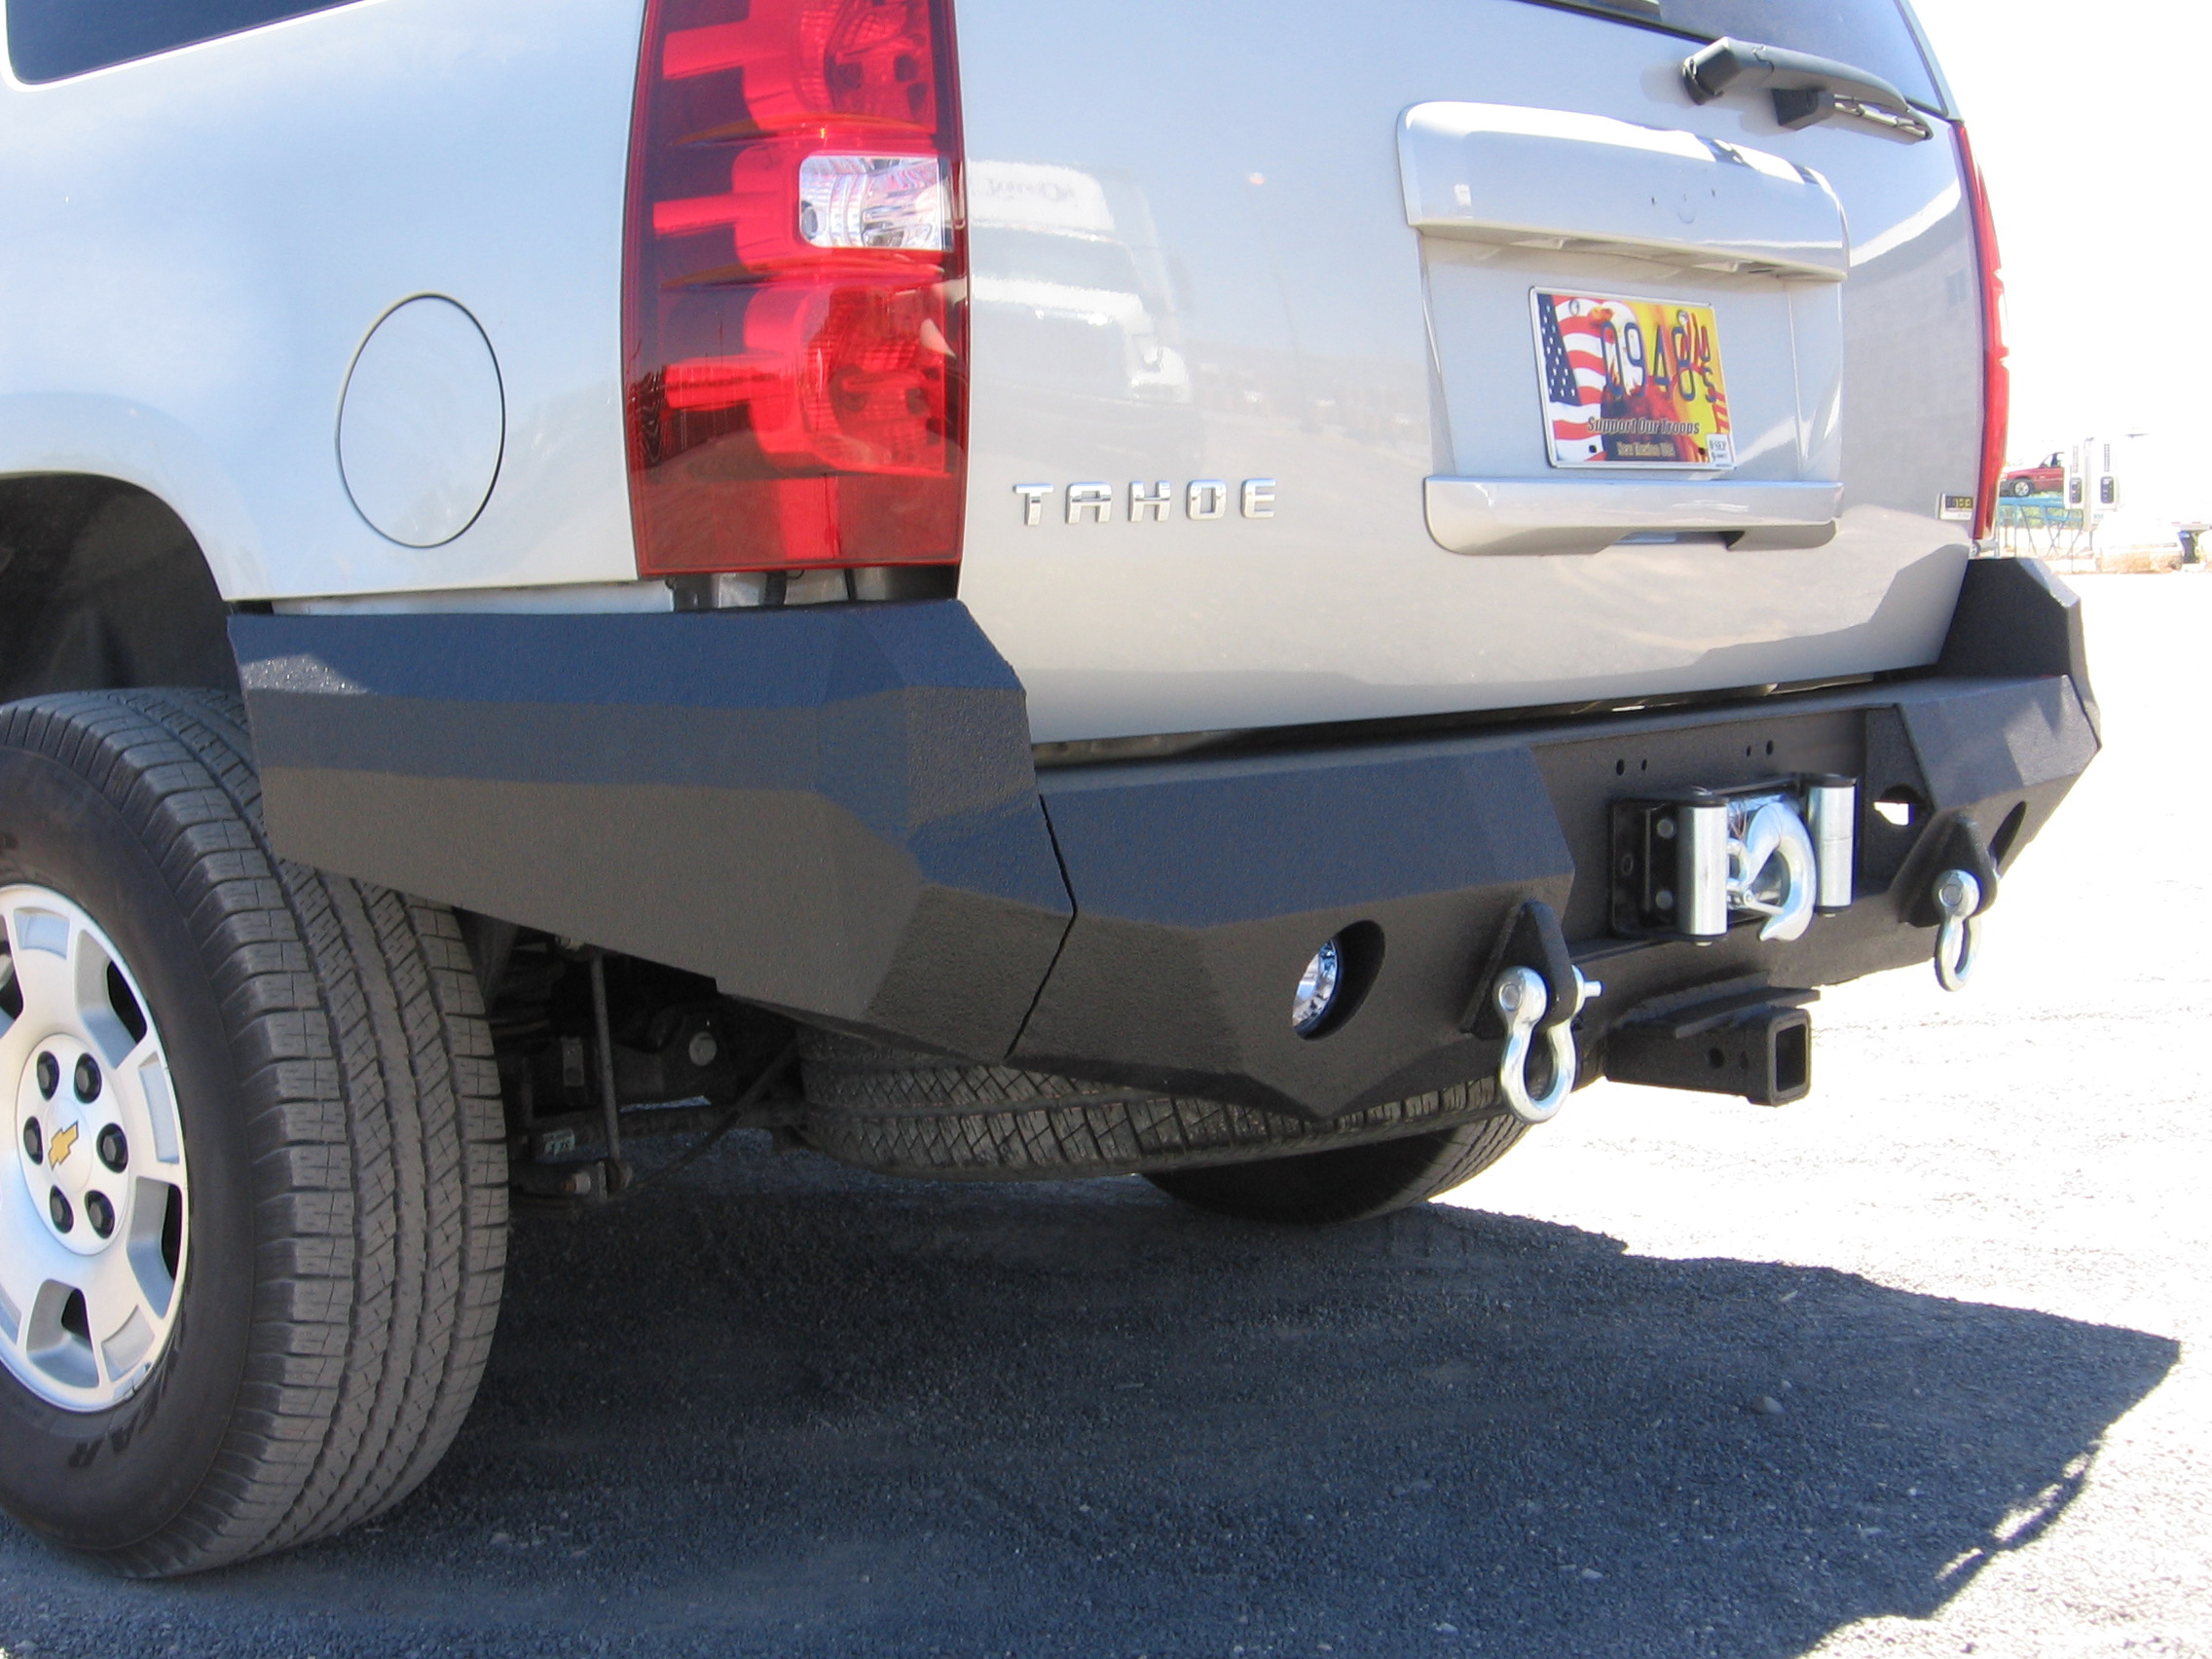 07-14 Chevrolet Tahoe rear base bumper